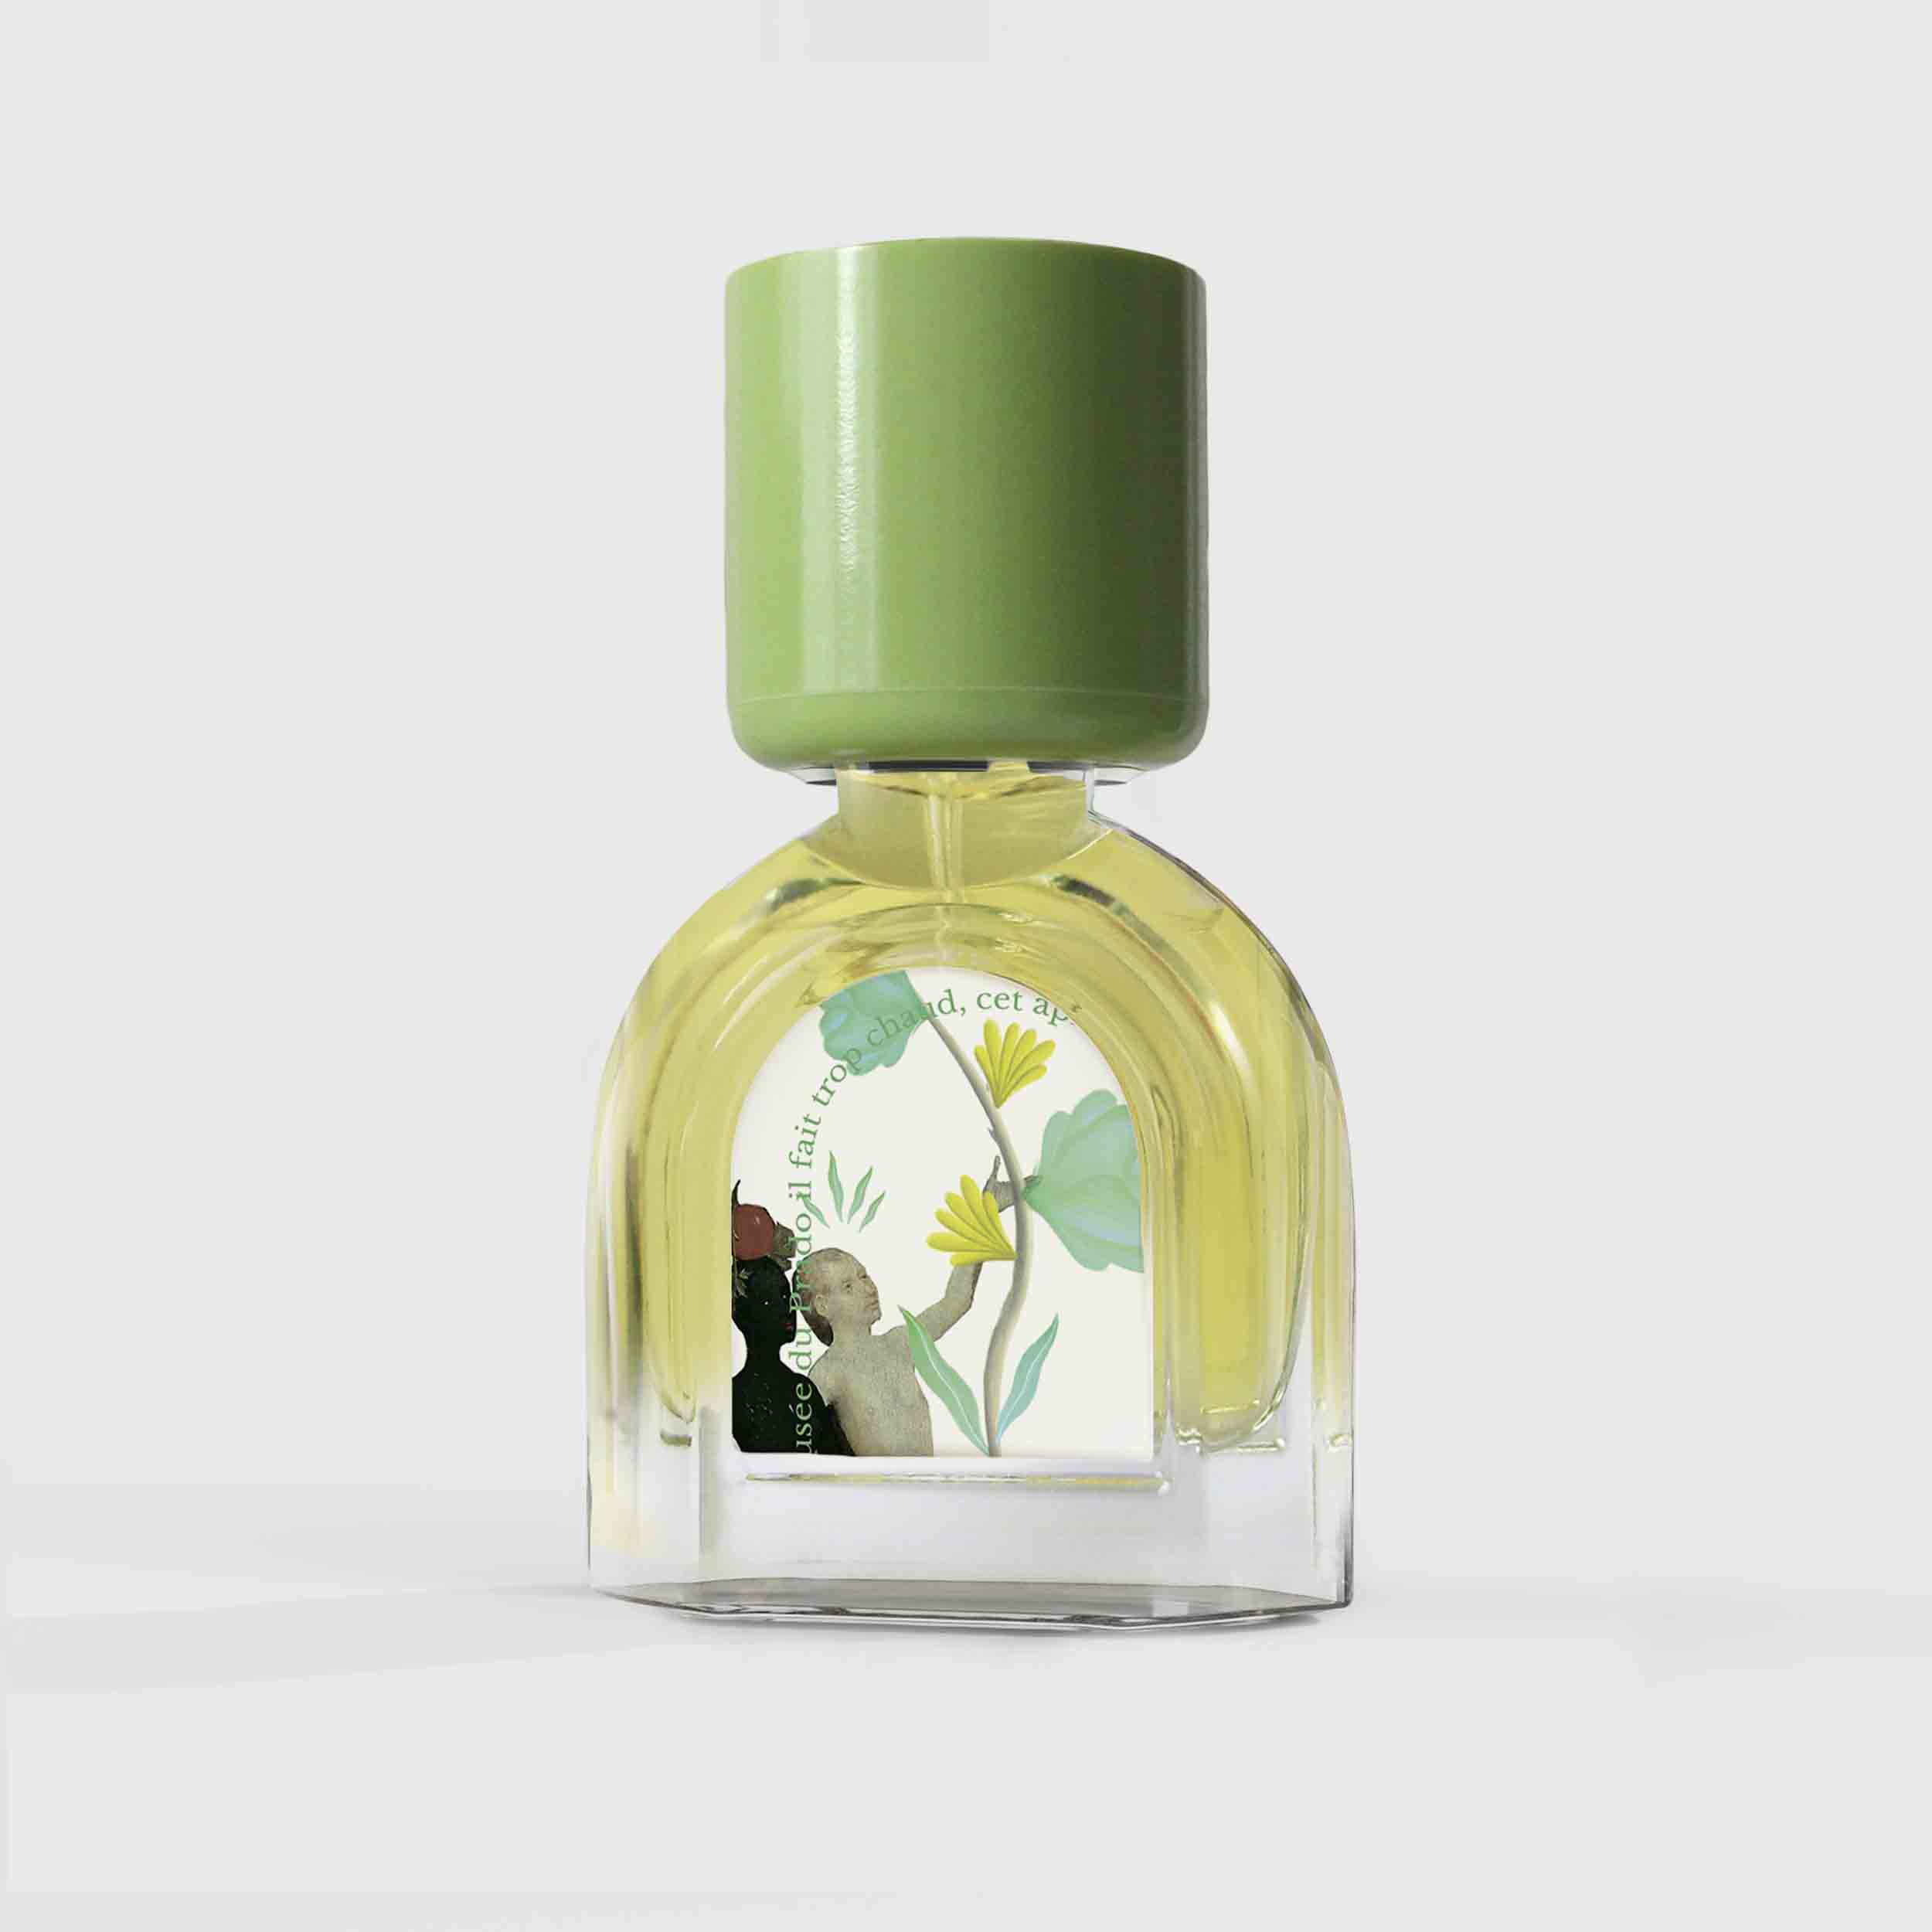 Eau de Délices Eau de Parfum 15ml Bottle by Le Jardin Retrouvé